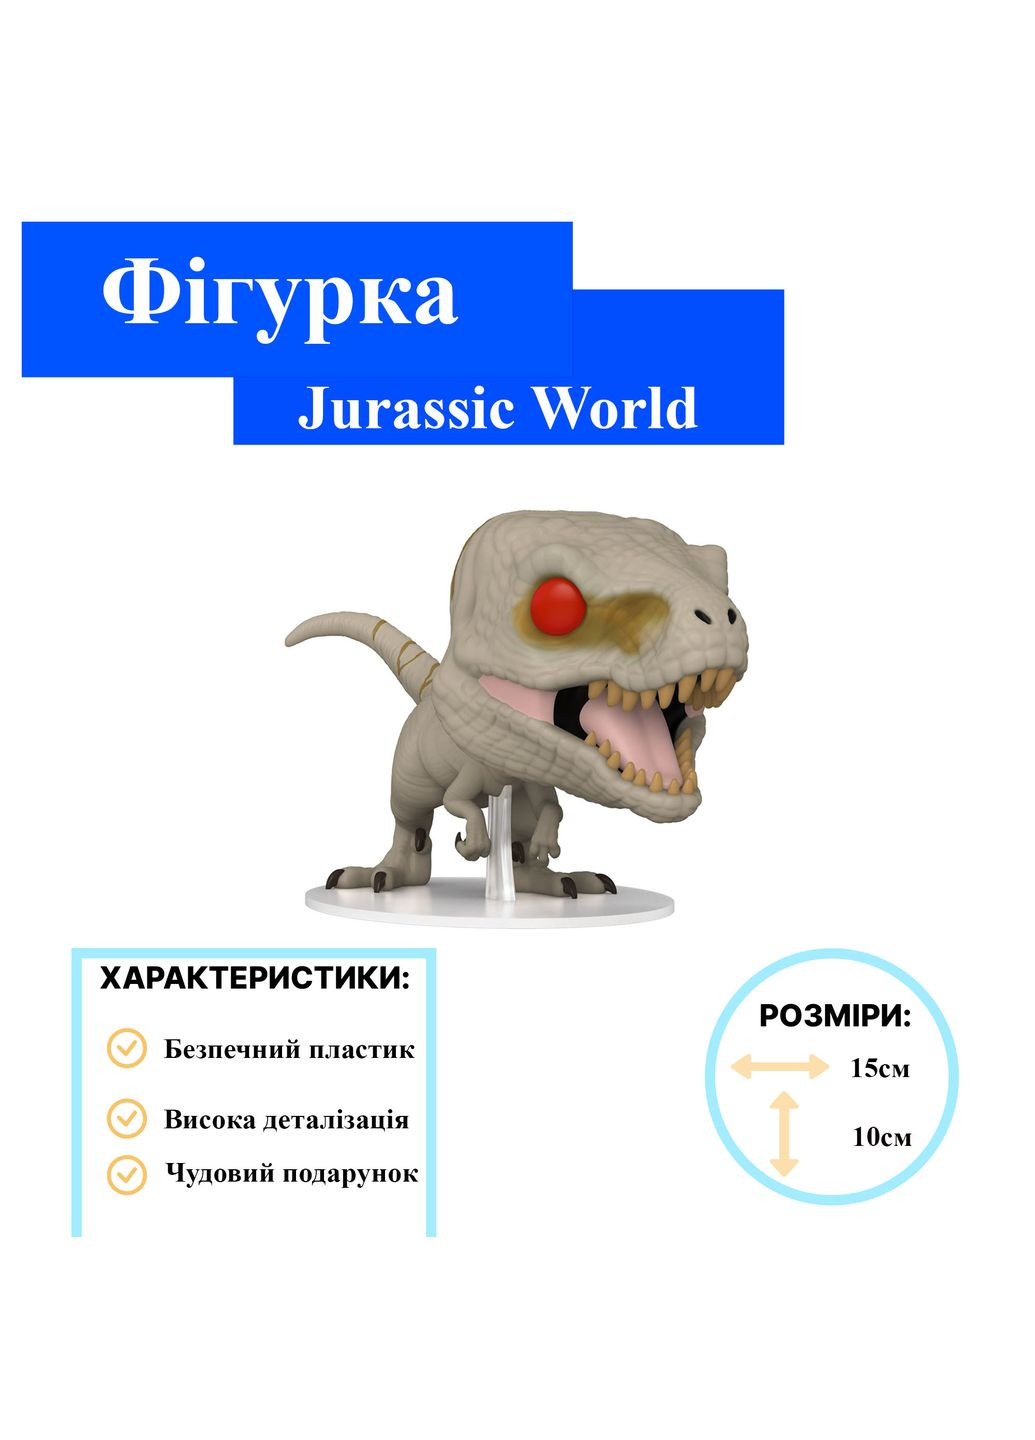 Парк Юрского периода Jurassic World Атроцираптор Призрак Atrociraptor (Ghost) Фанко поп игровая виниловая фигурка 1205 Funko Pop (280258242)